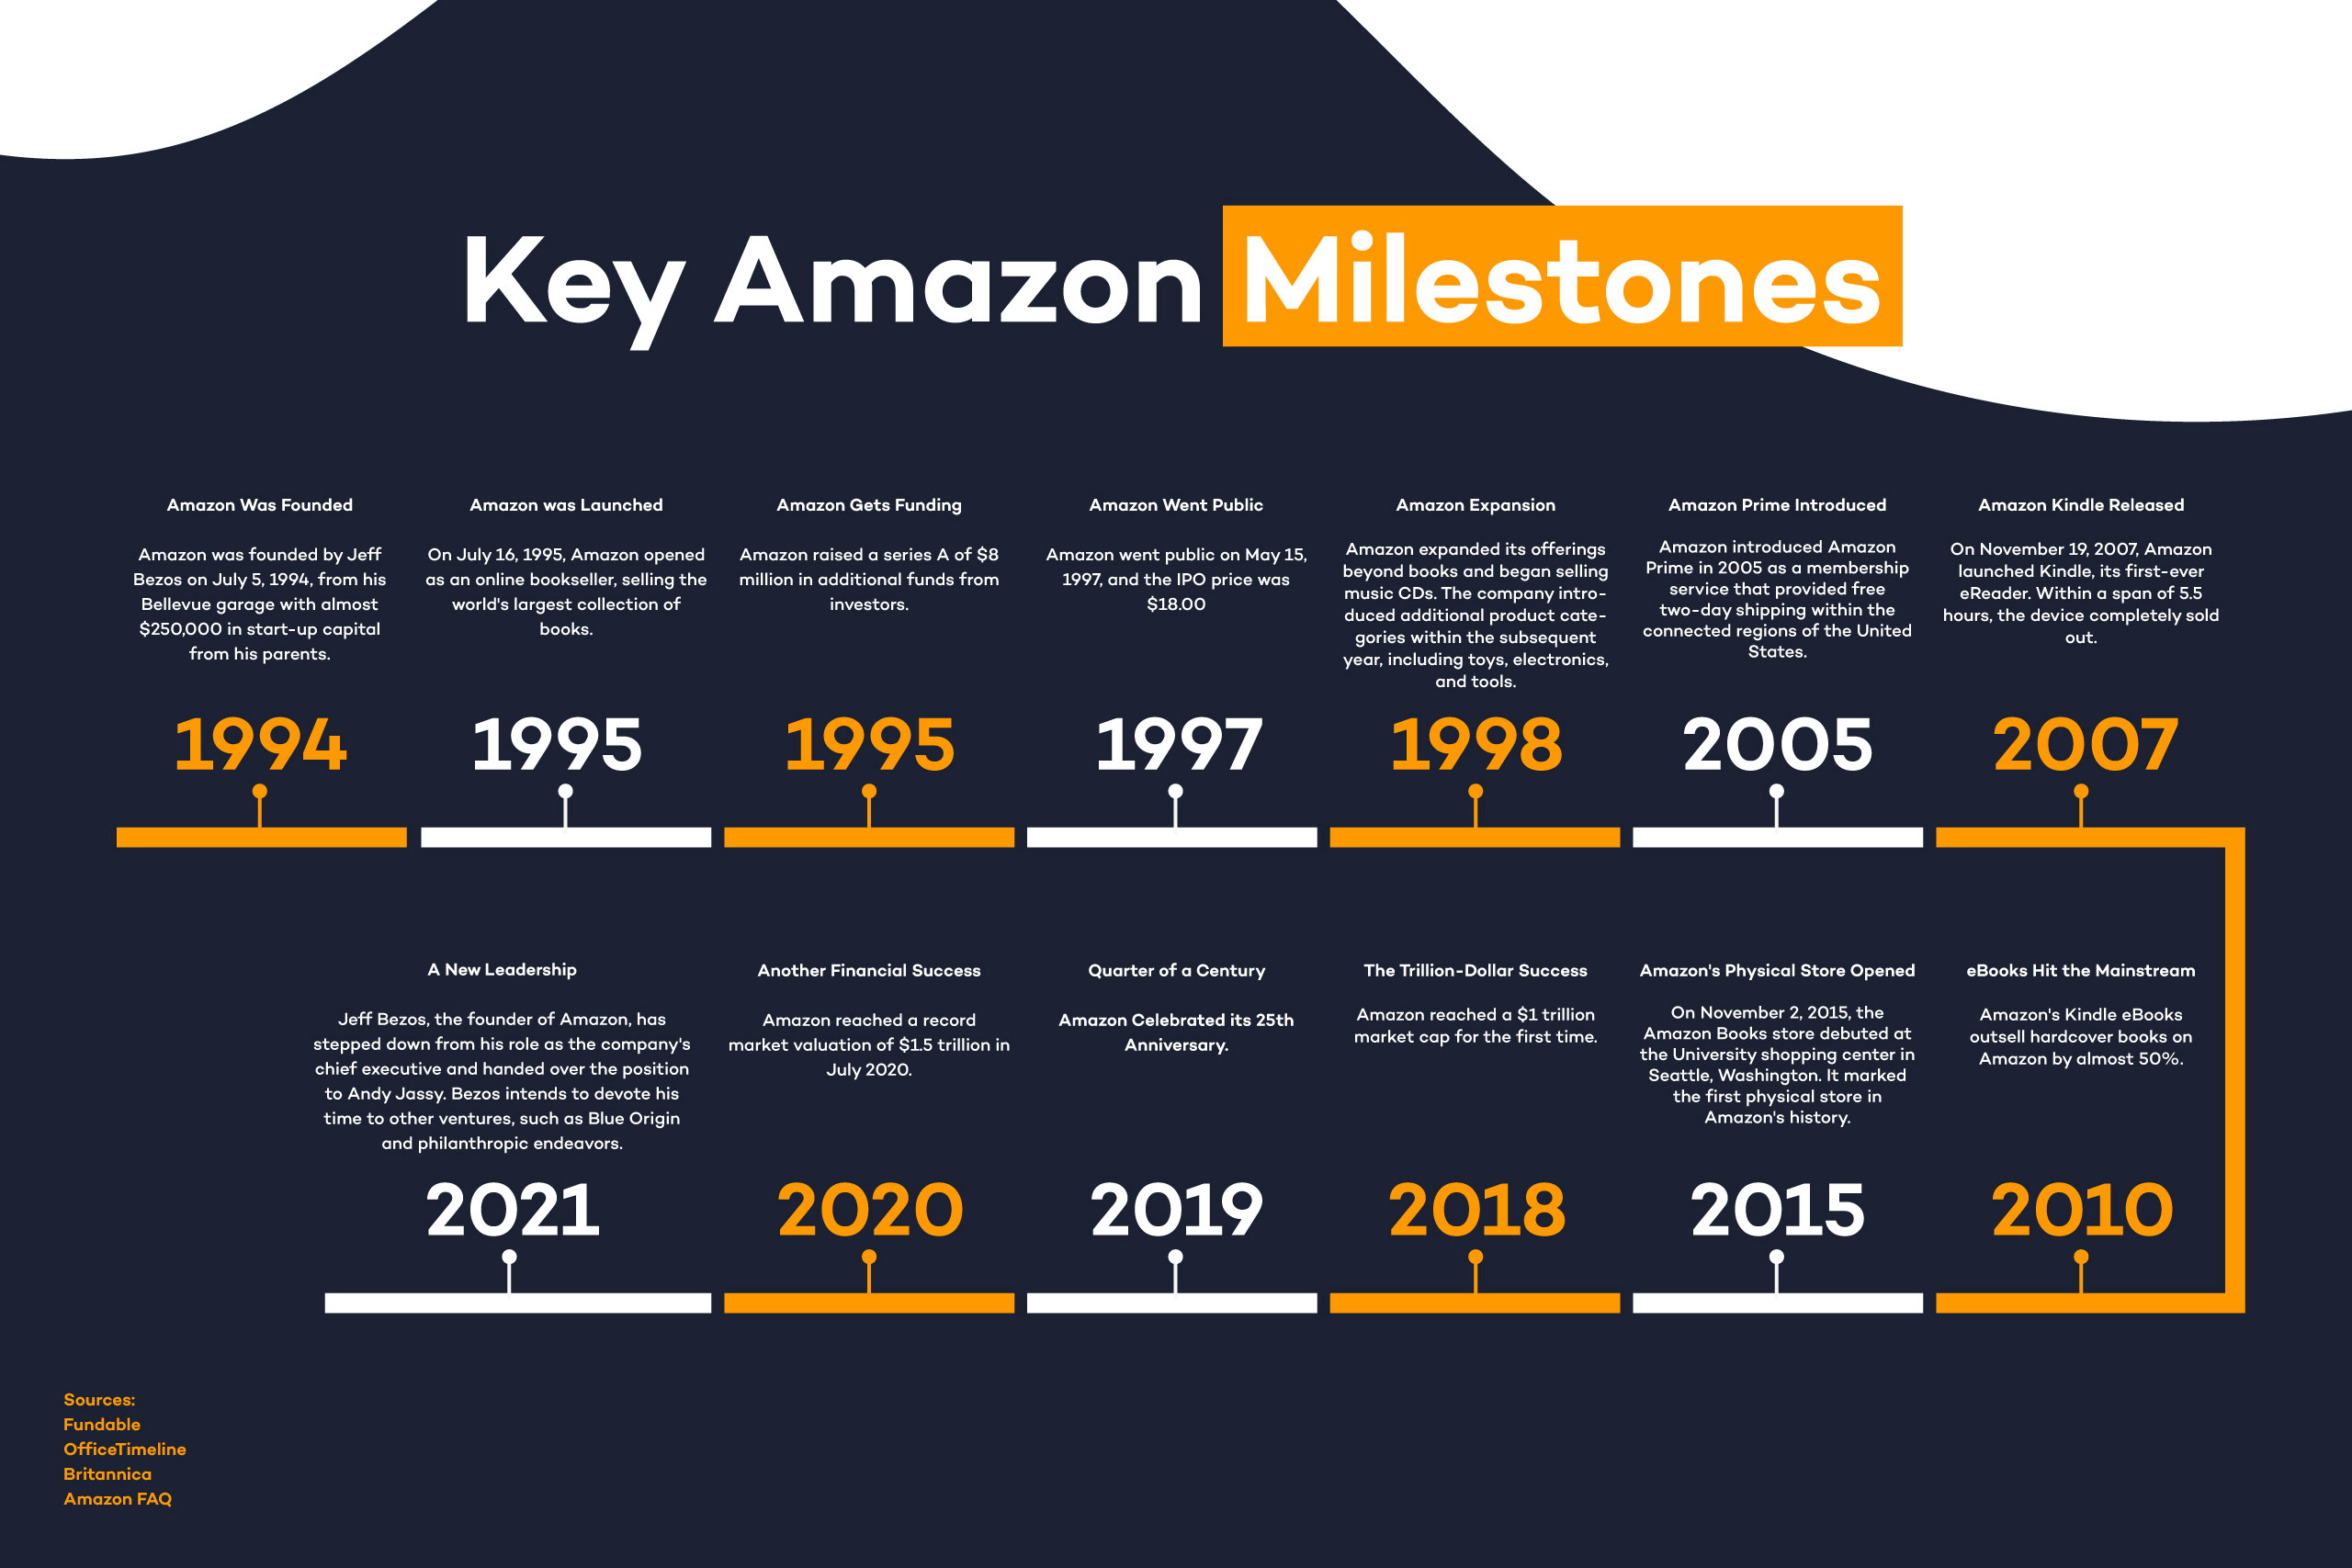 amazon-key-milestones